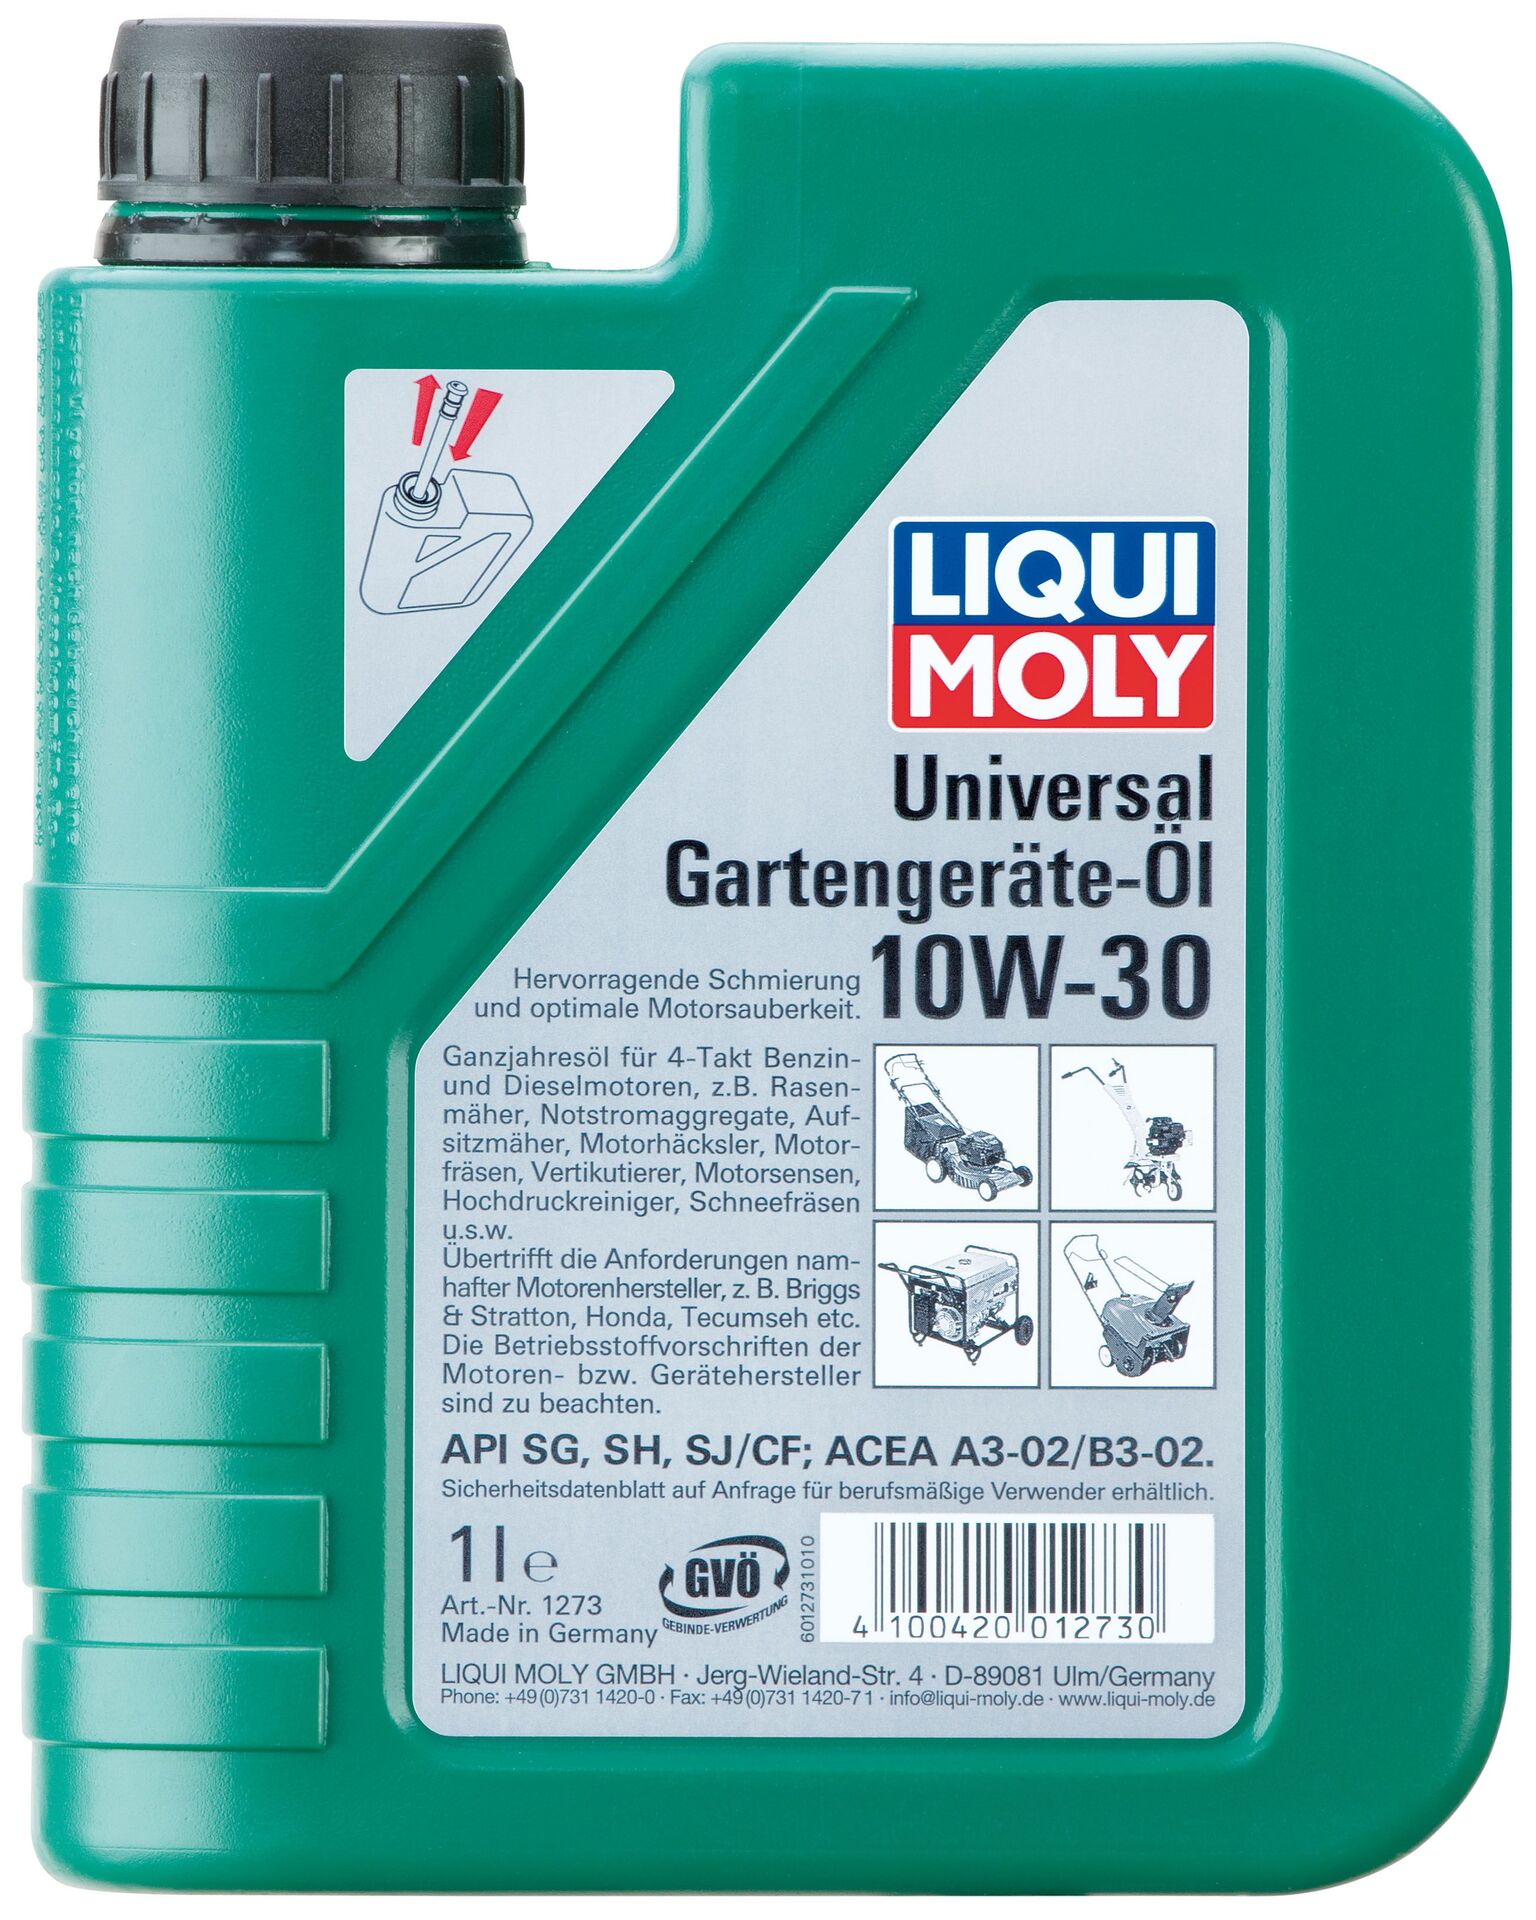 Universal Gartengeräte-Öl 10 W-30